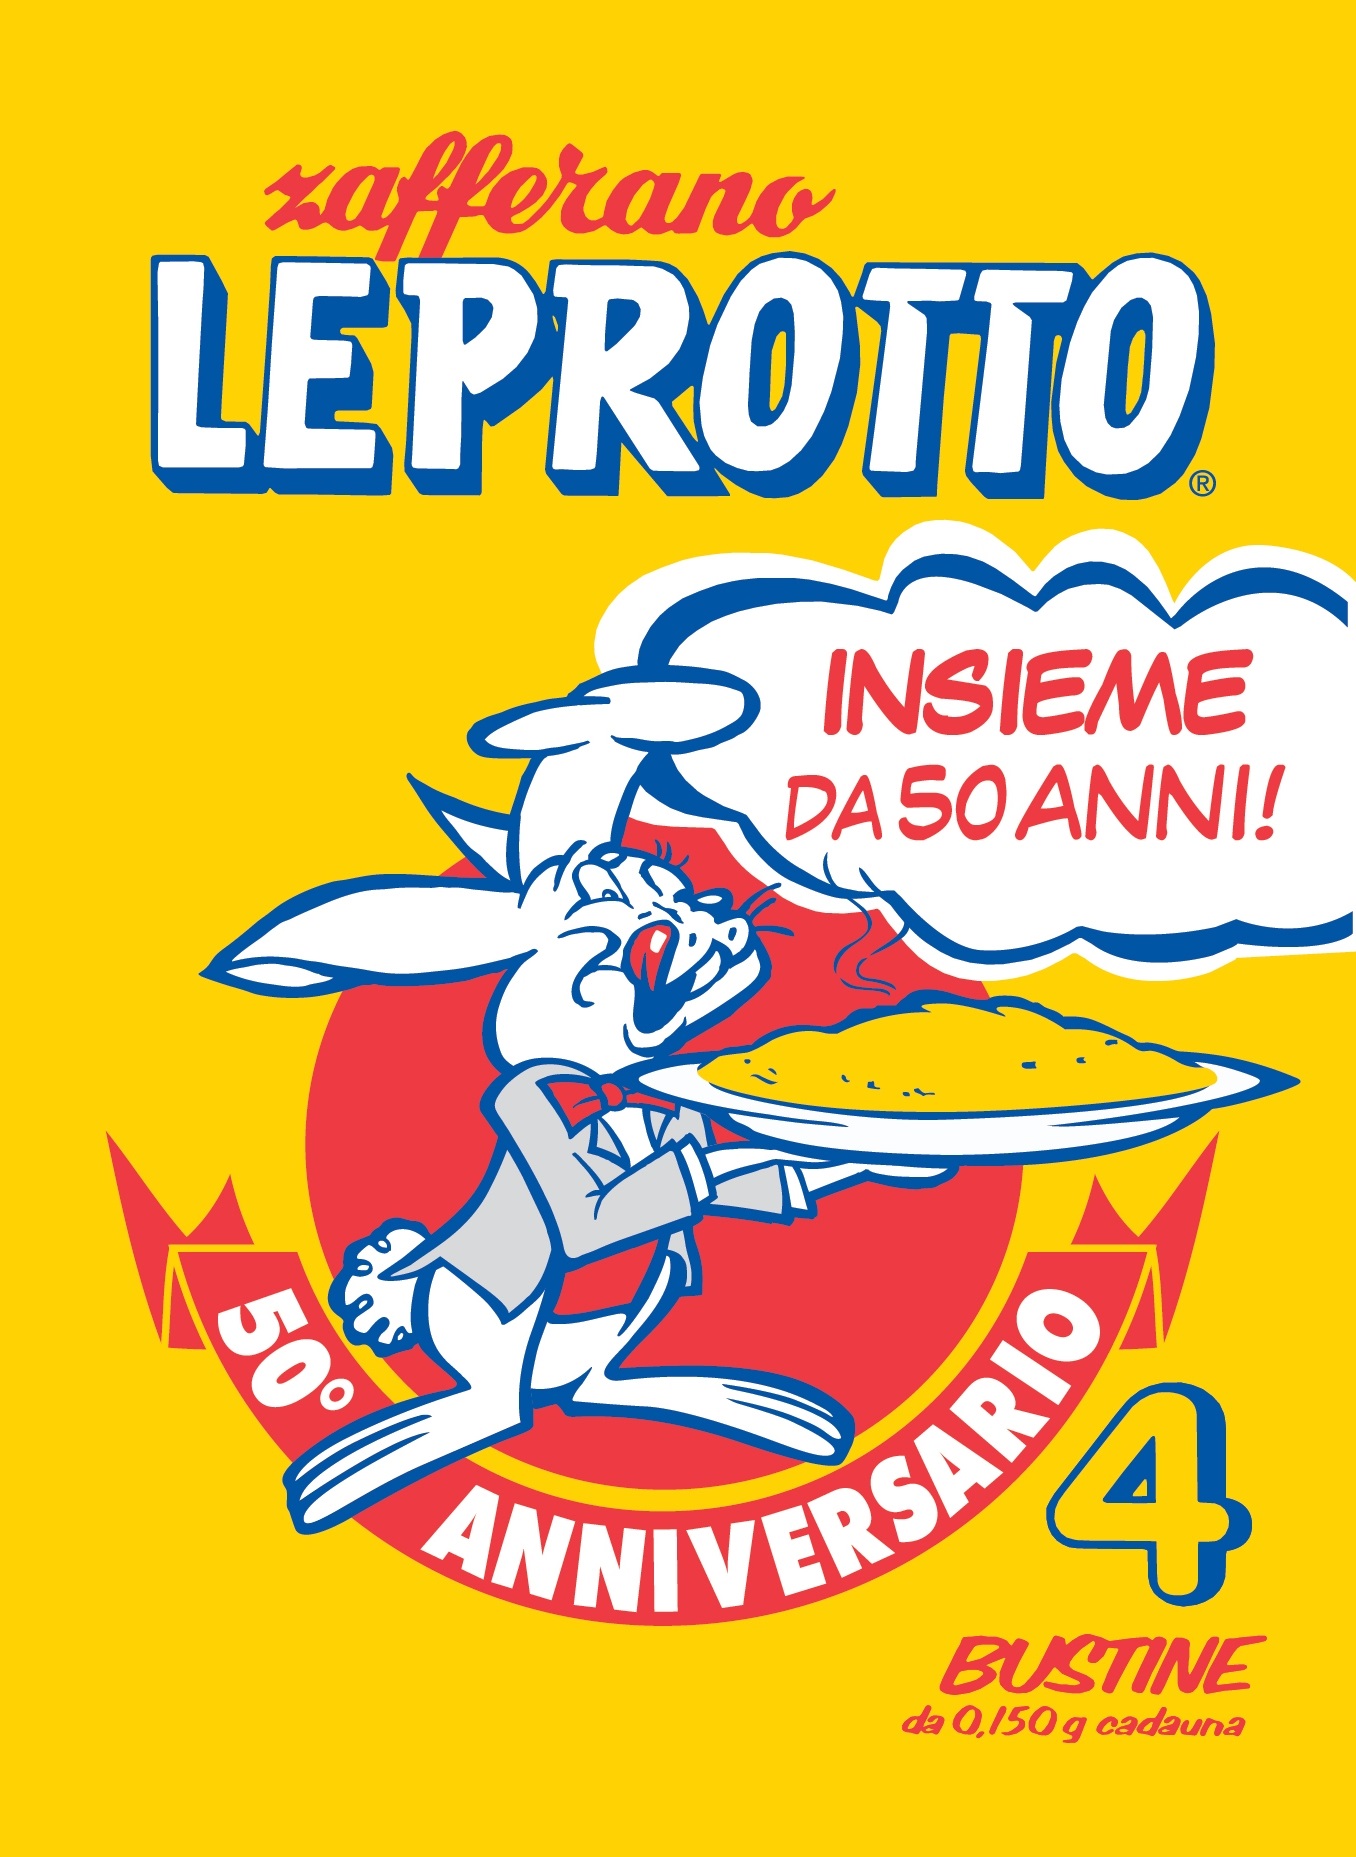 Zafferano Leprotto: a Milano continuano i festeggiamenti per il suo 50esimo anniversario